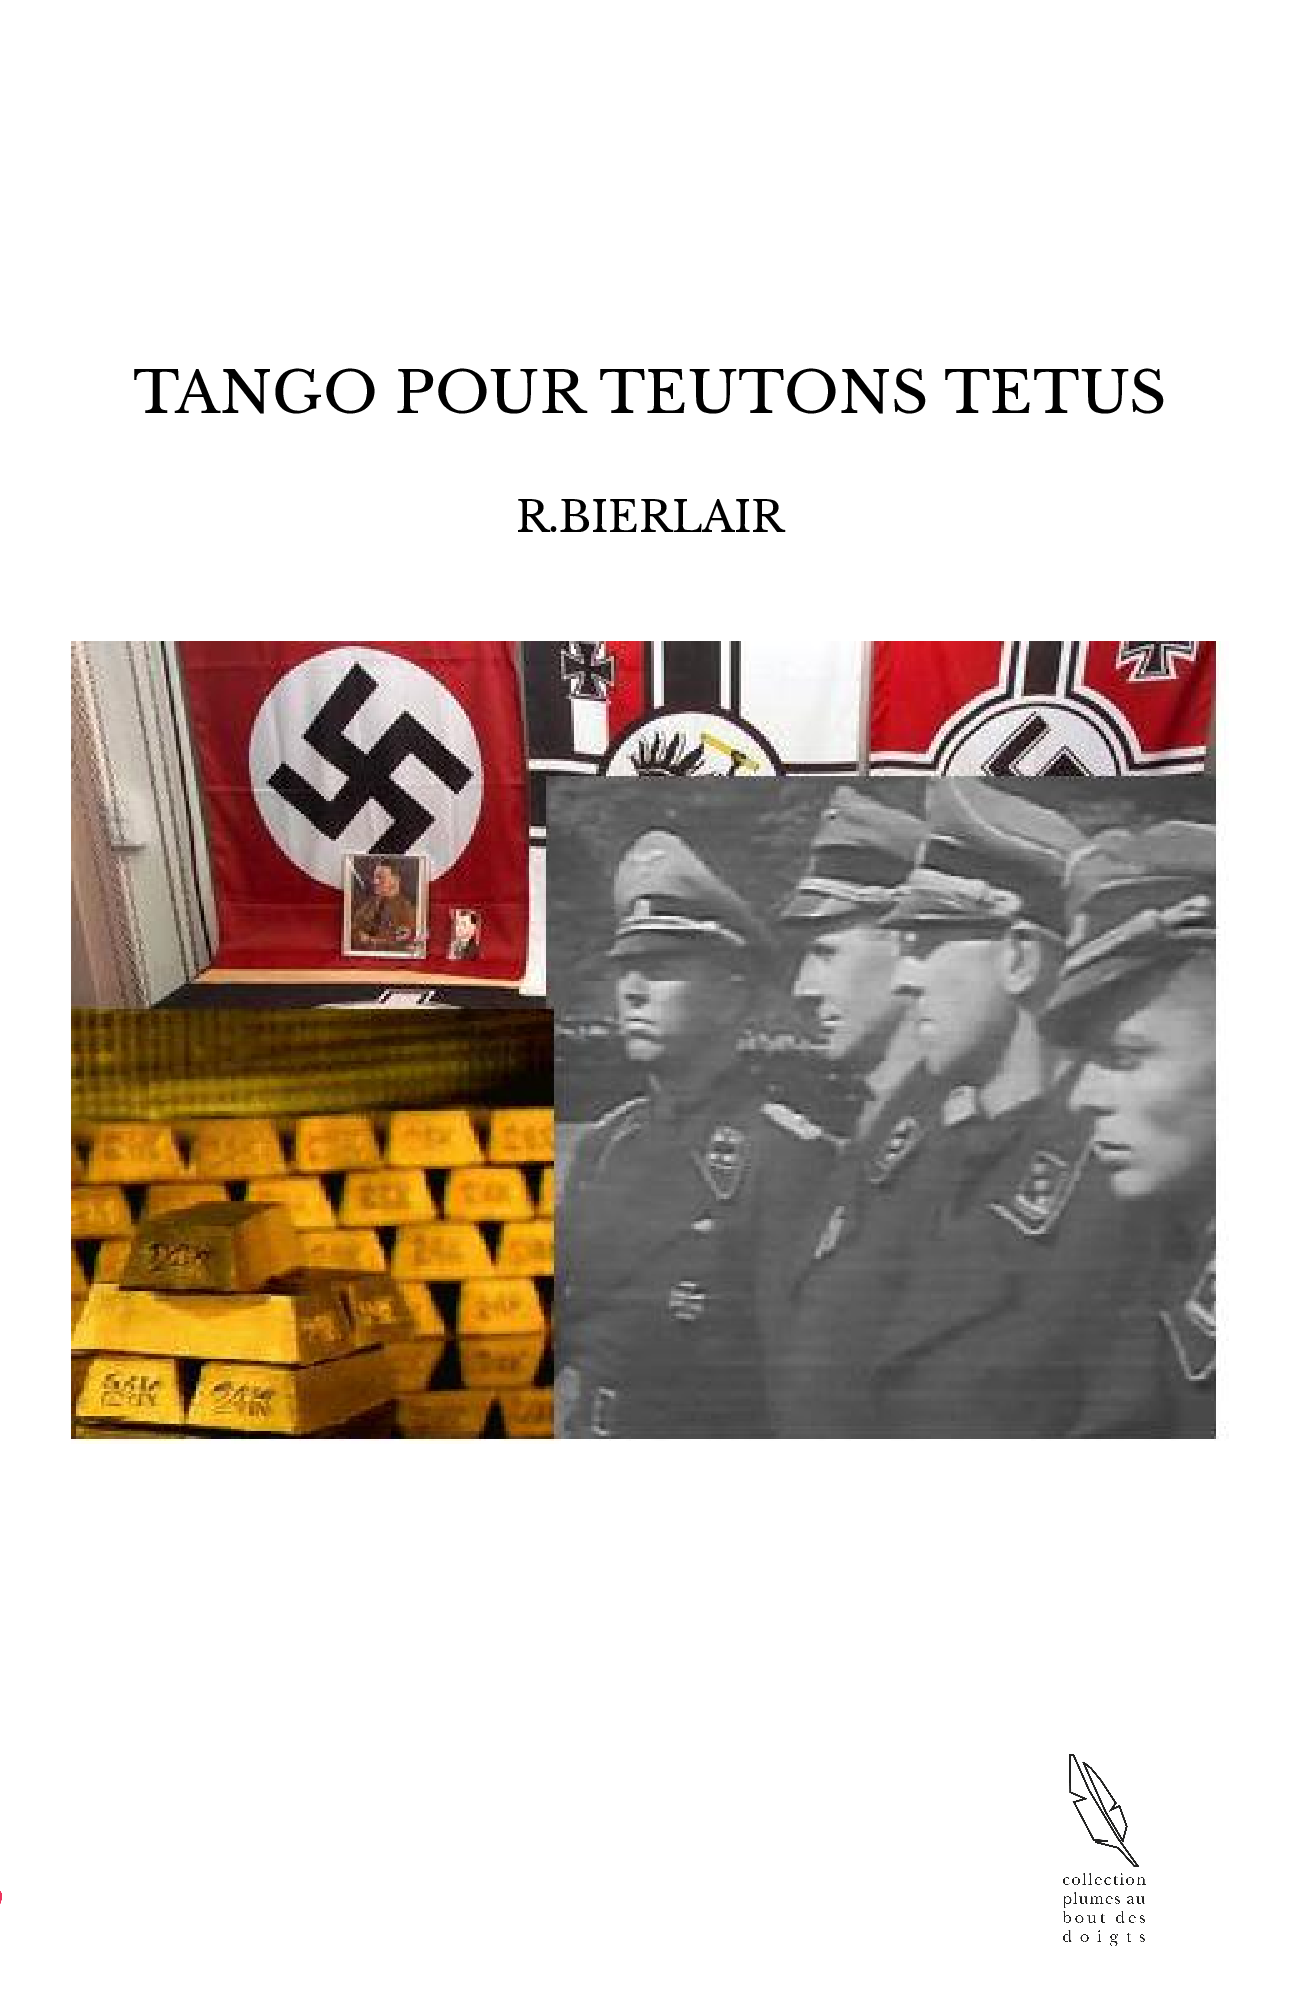 TANGO POUR TEUTONS TETUS